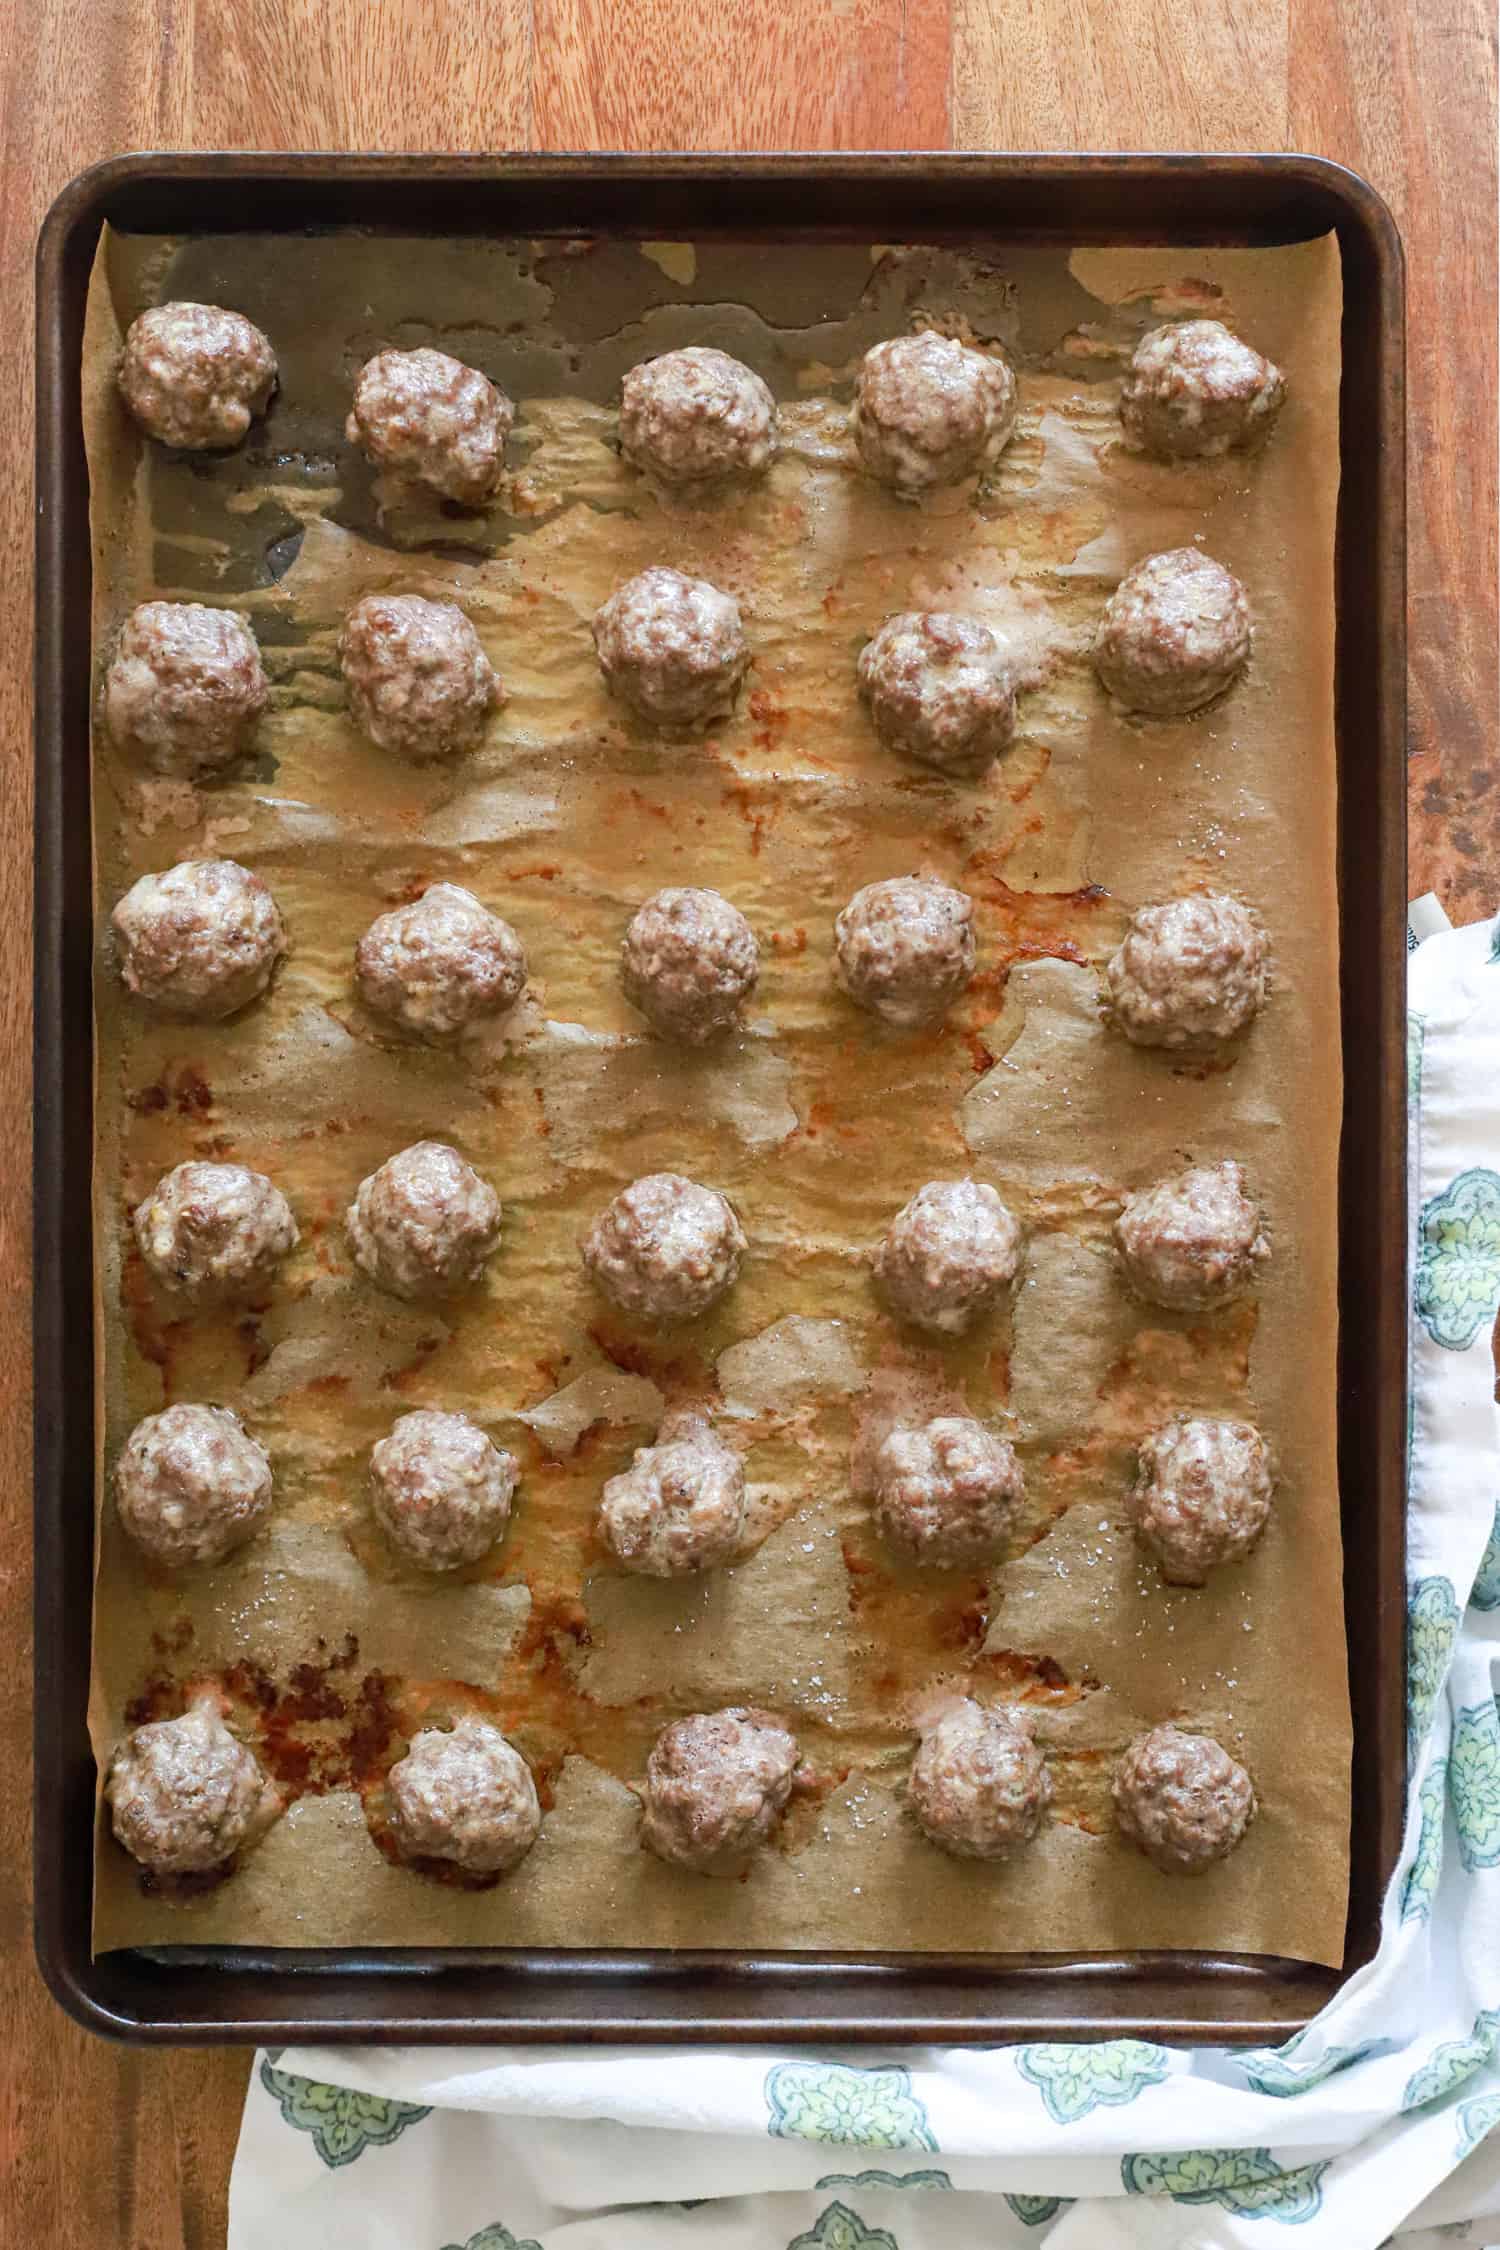 baked greek meatballs on a baking sheet.